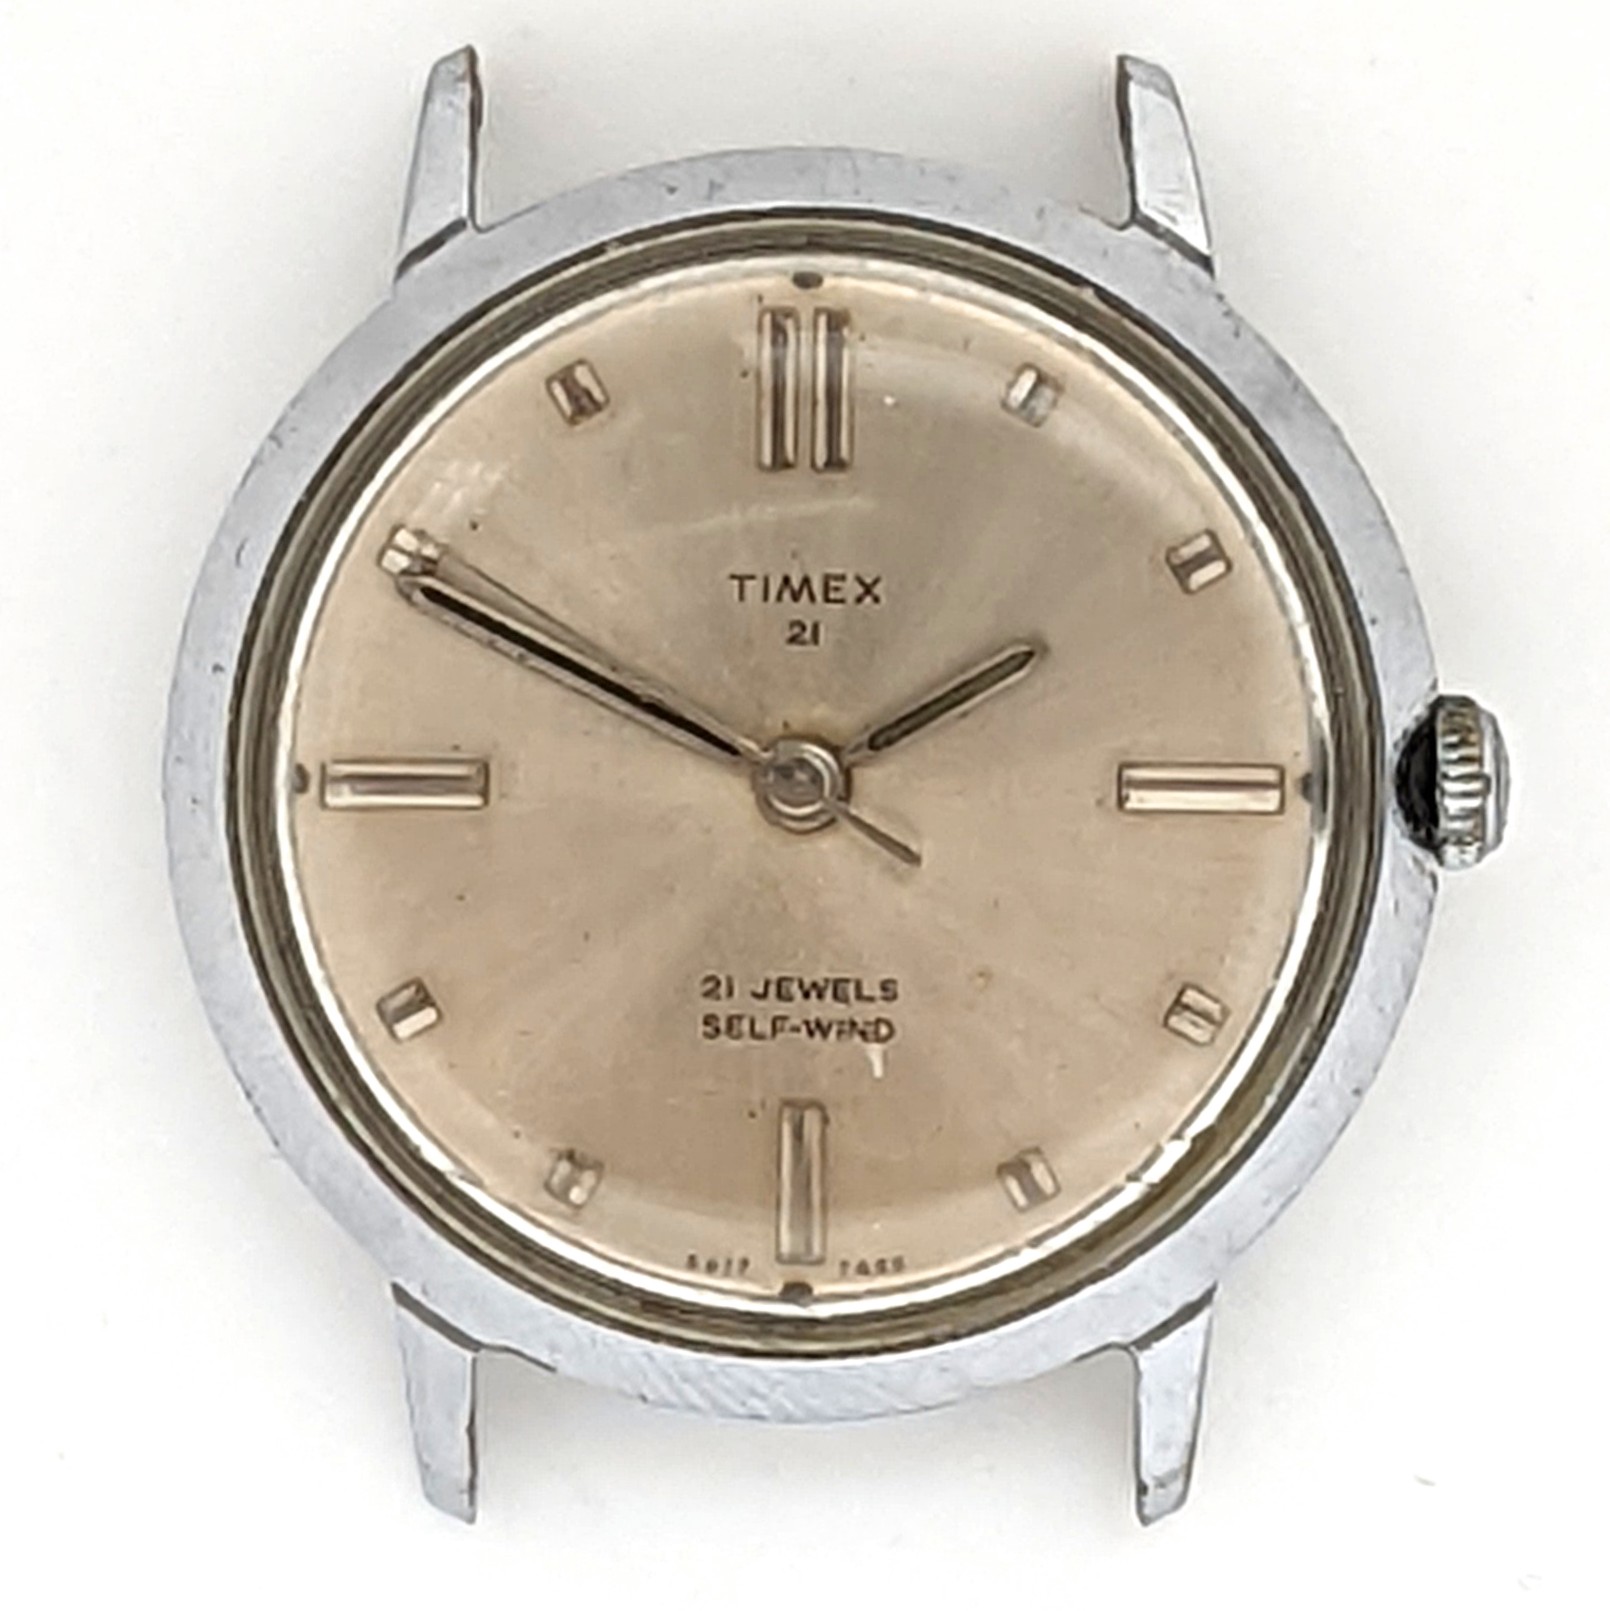 Timex 21 Jewel 6517 7265 [1965] Prestige